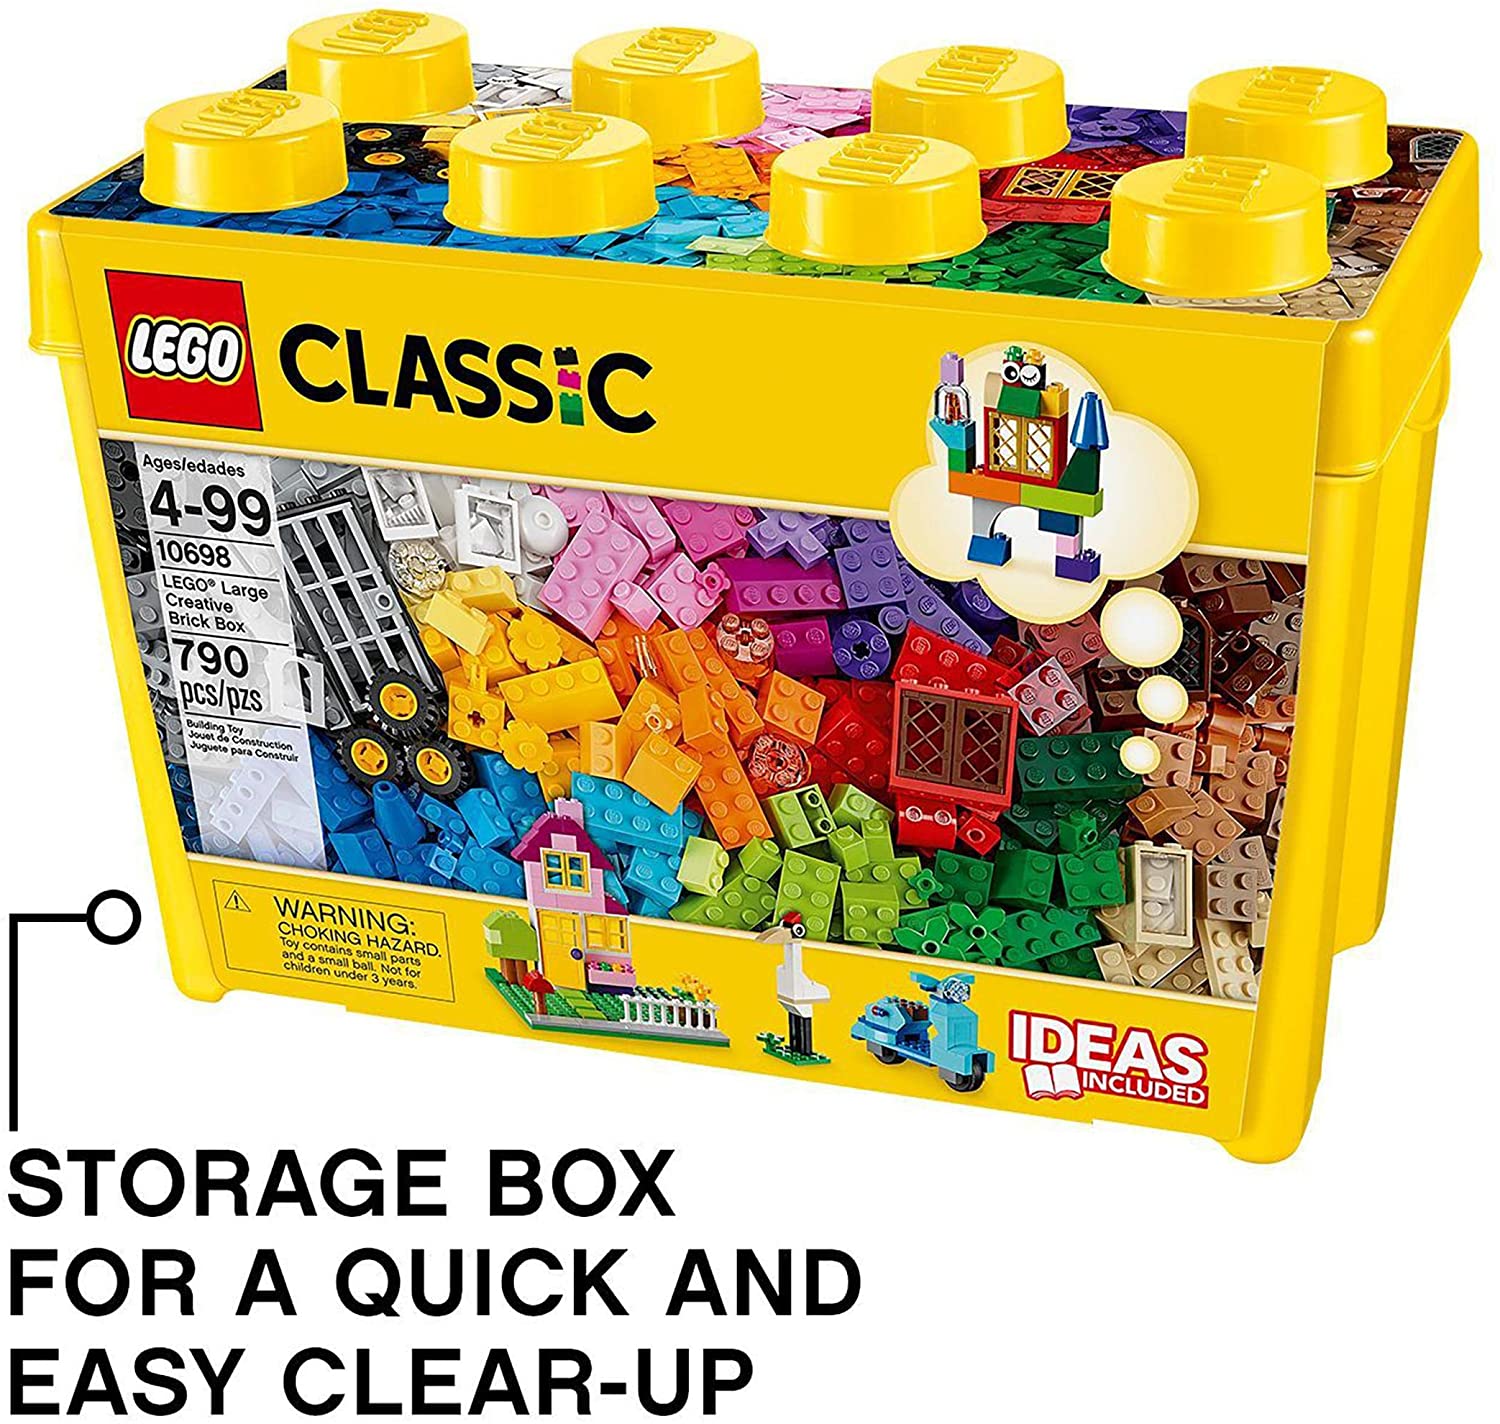 Lego 10698 Large Creative Brick